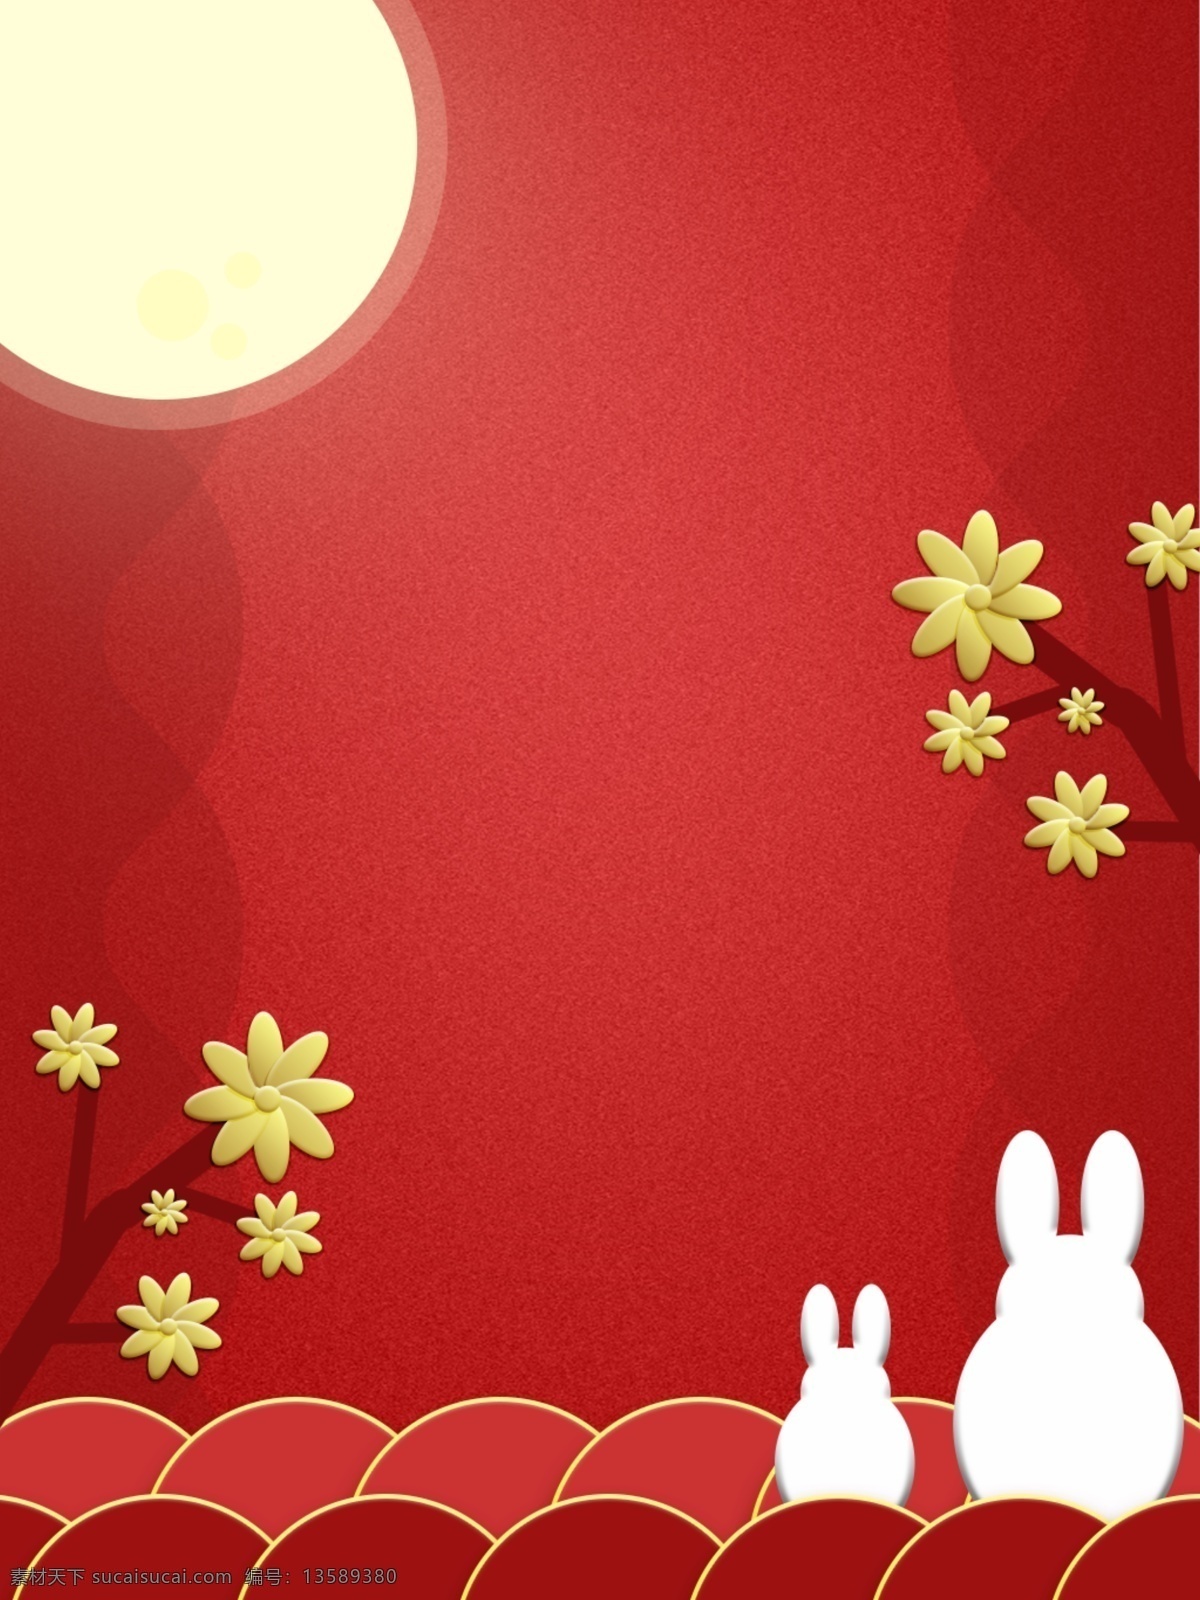 纯 原创 中国 红 微 立体 中秋节 背景 中国红 微立体 金花 花瓣 立体花朵 月亮 兔子 简约 质感 广告背景